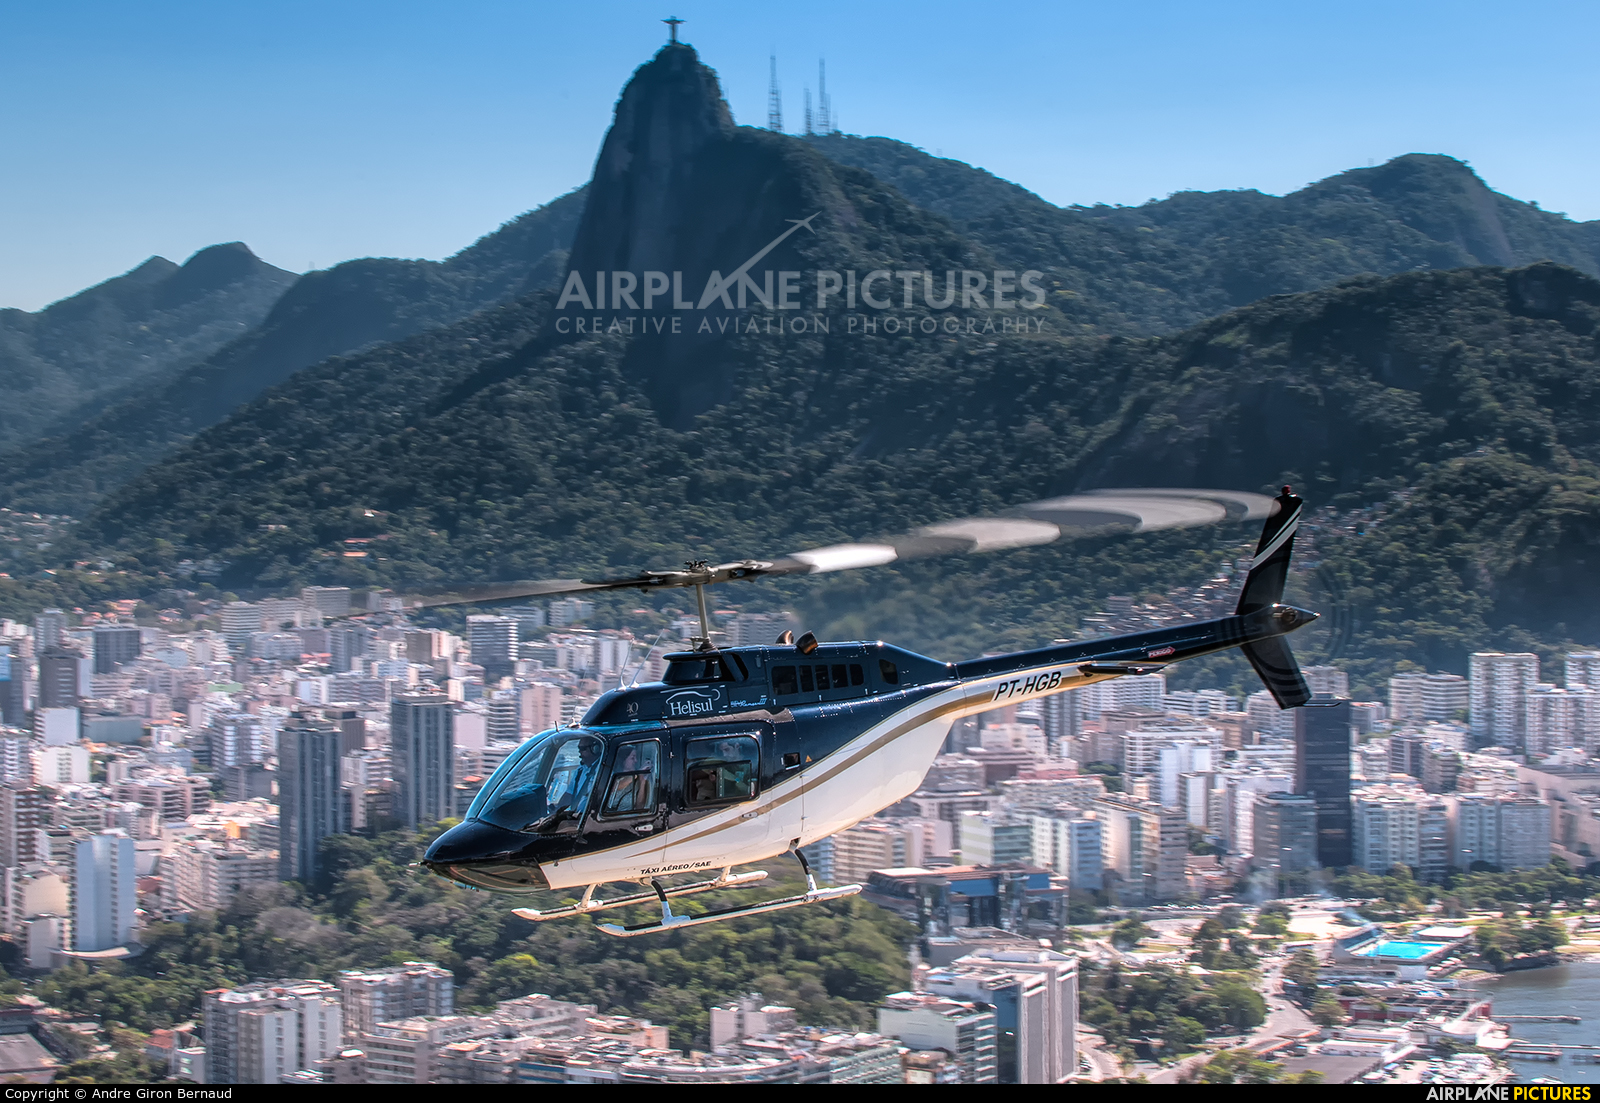 Helisul Táxi Aéreo PT-HGB aircraft at Rio de Janeiro - Morro da Urca Heliport